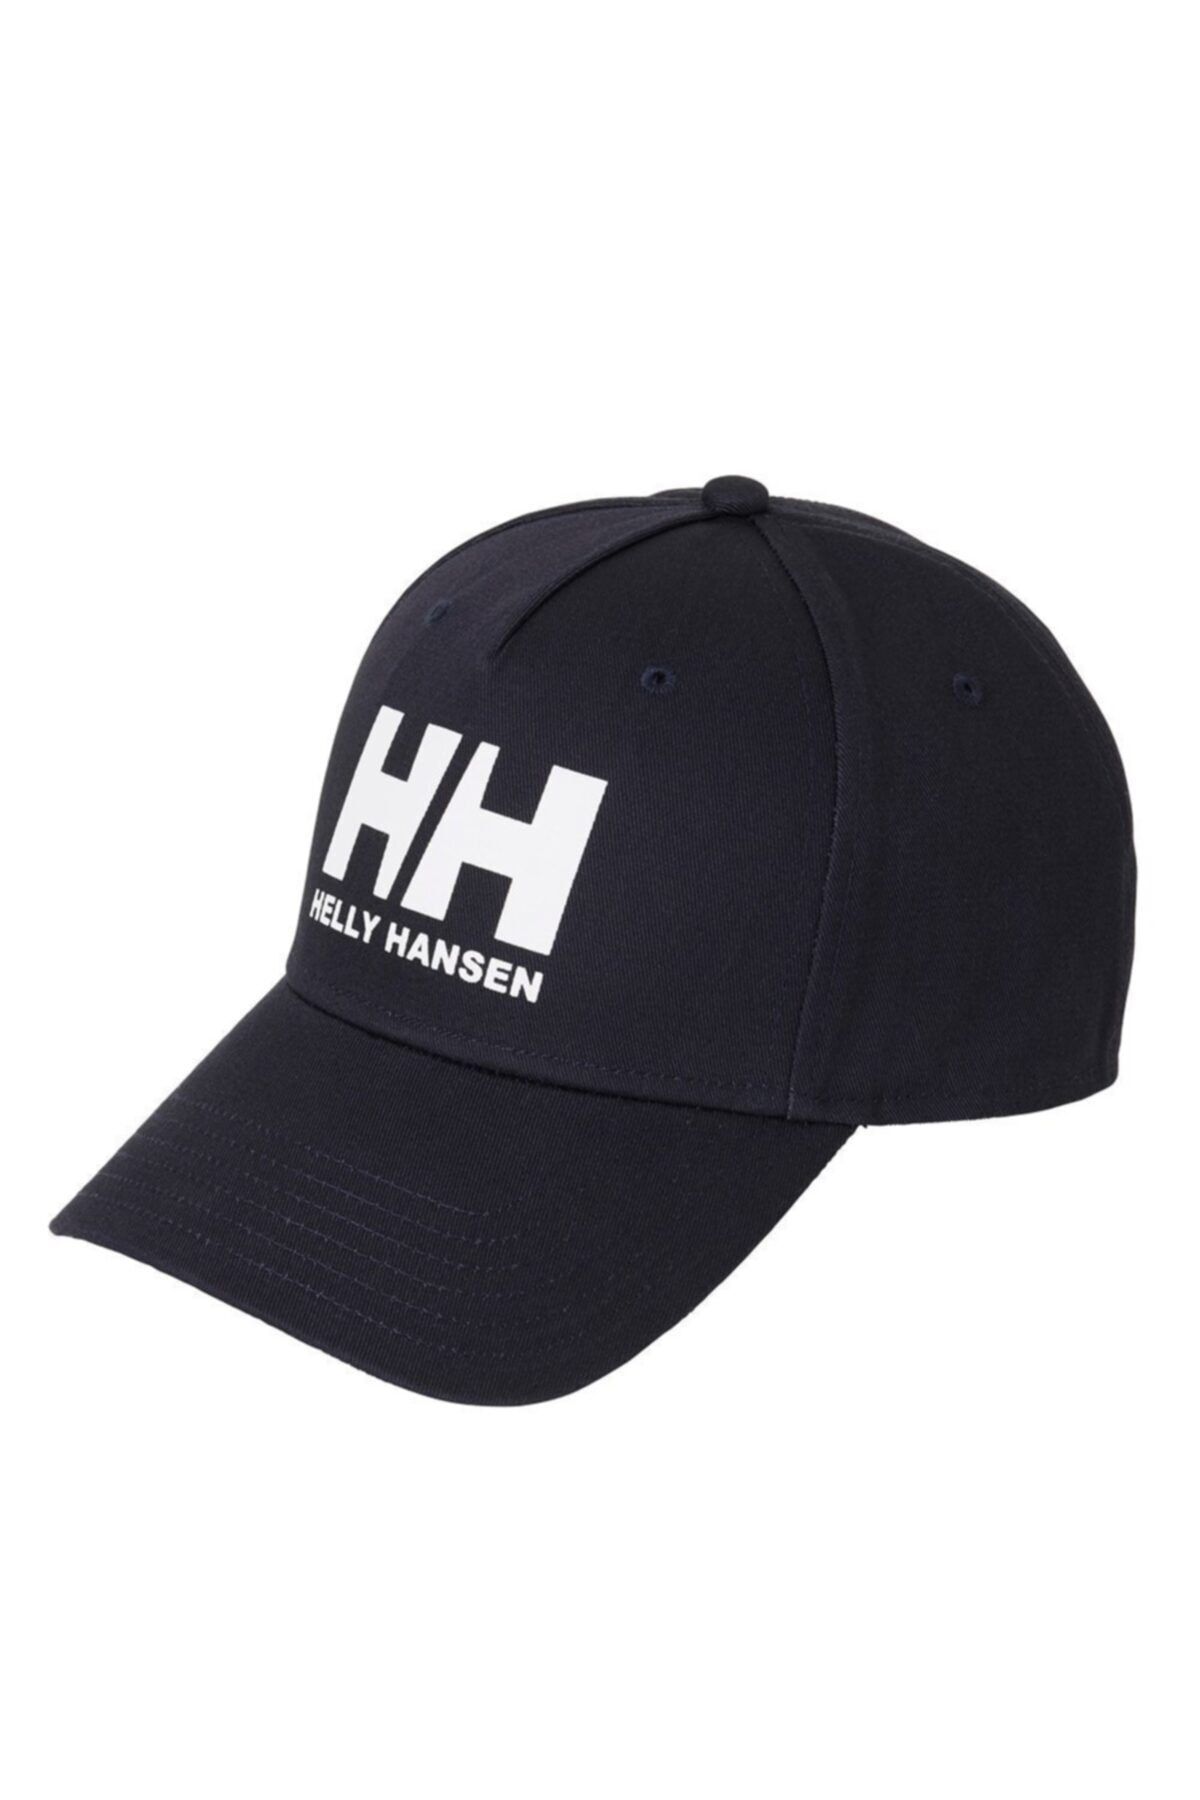 Helly Hansen Hh Ball Cap Şapka